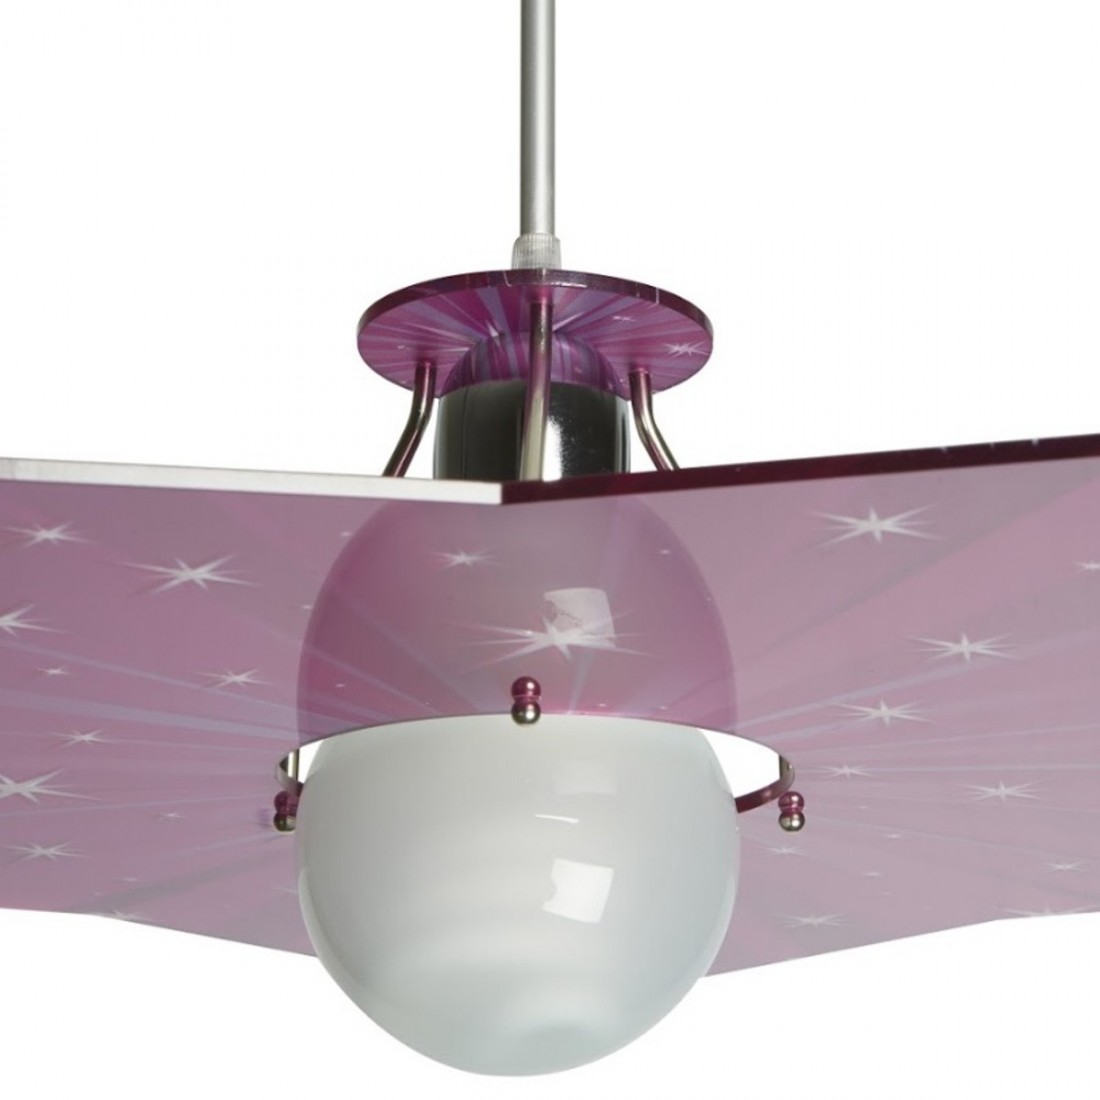 Suspension EM-STAR CL1532 49 E27 LED plafonnier en acrylique transparent fuchsia étoiles chambres d'enfants